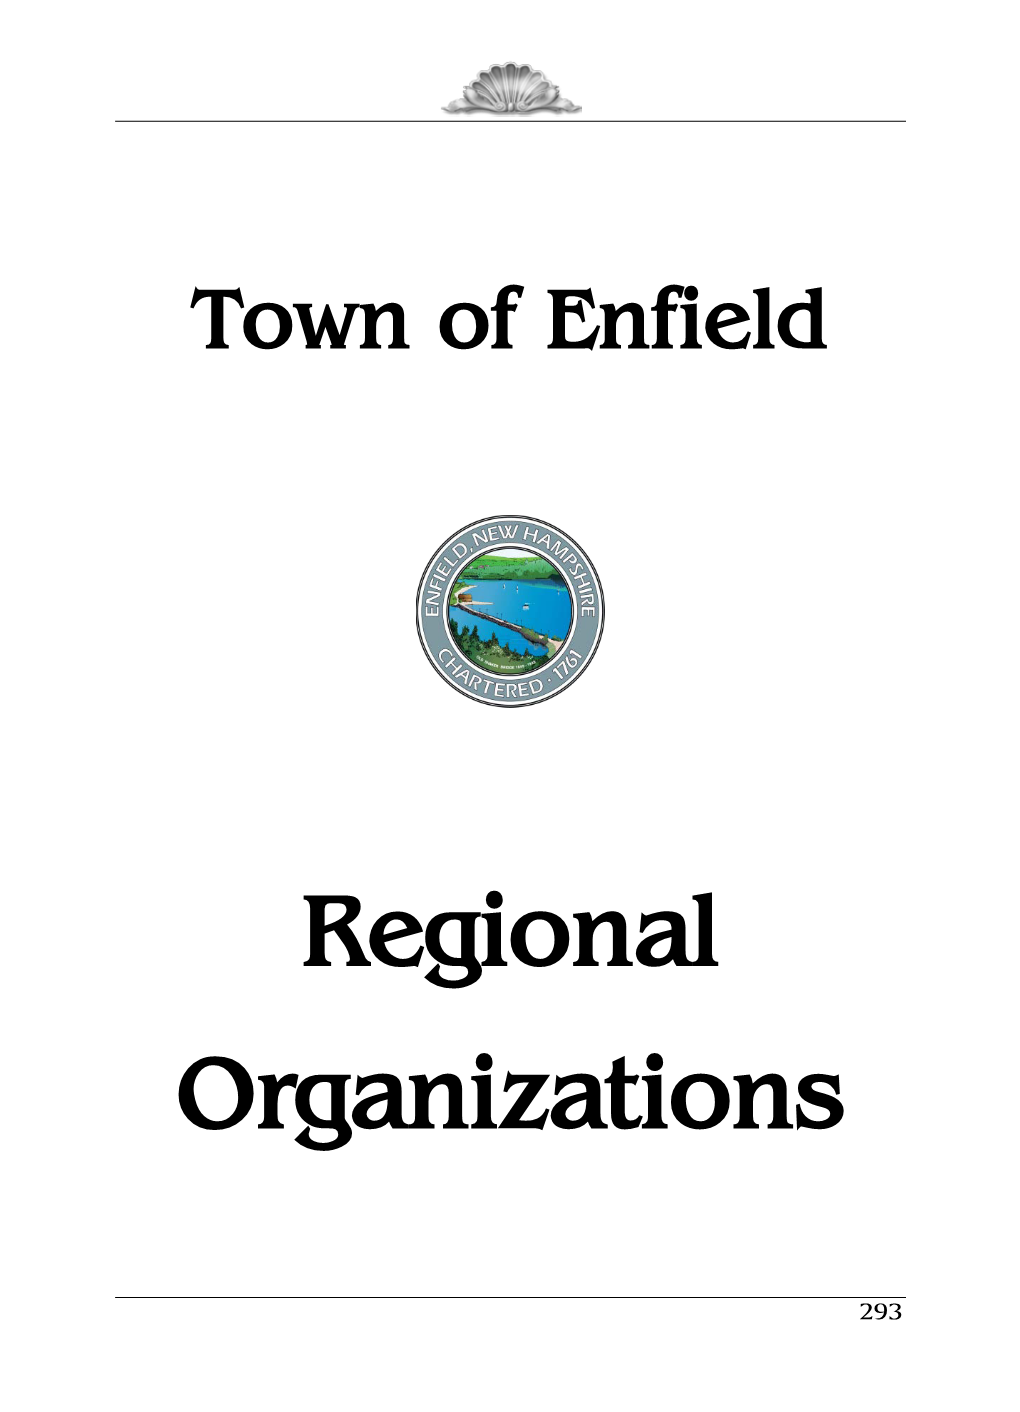 Regional Organizations